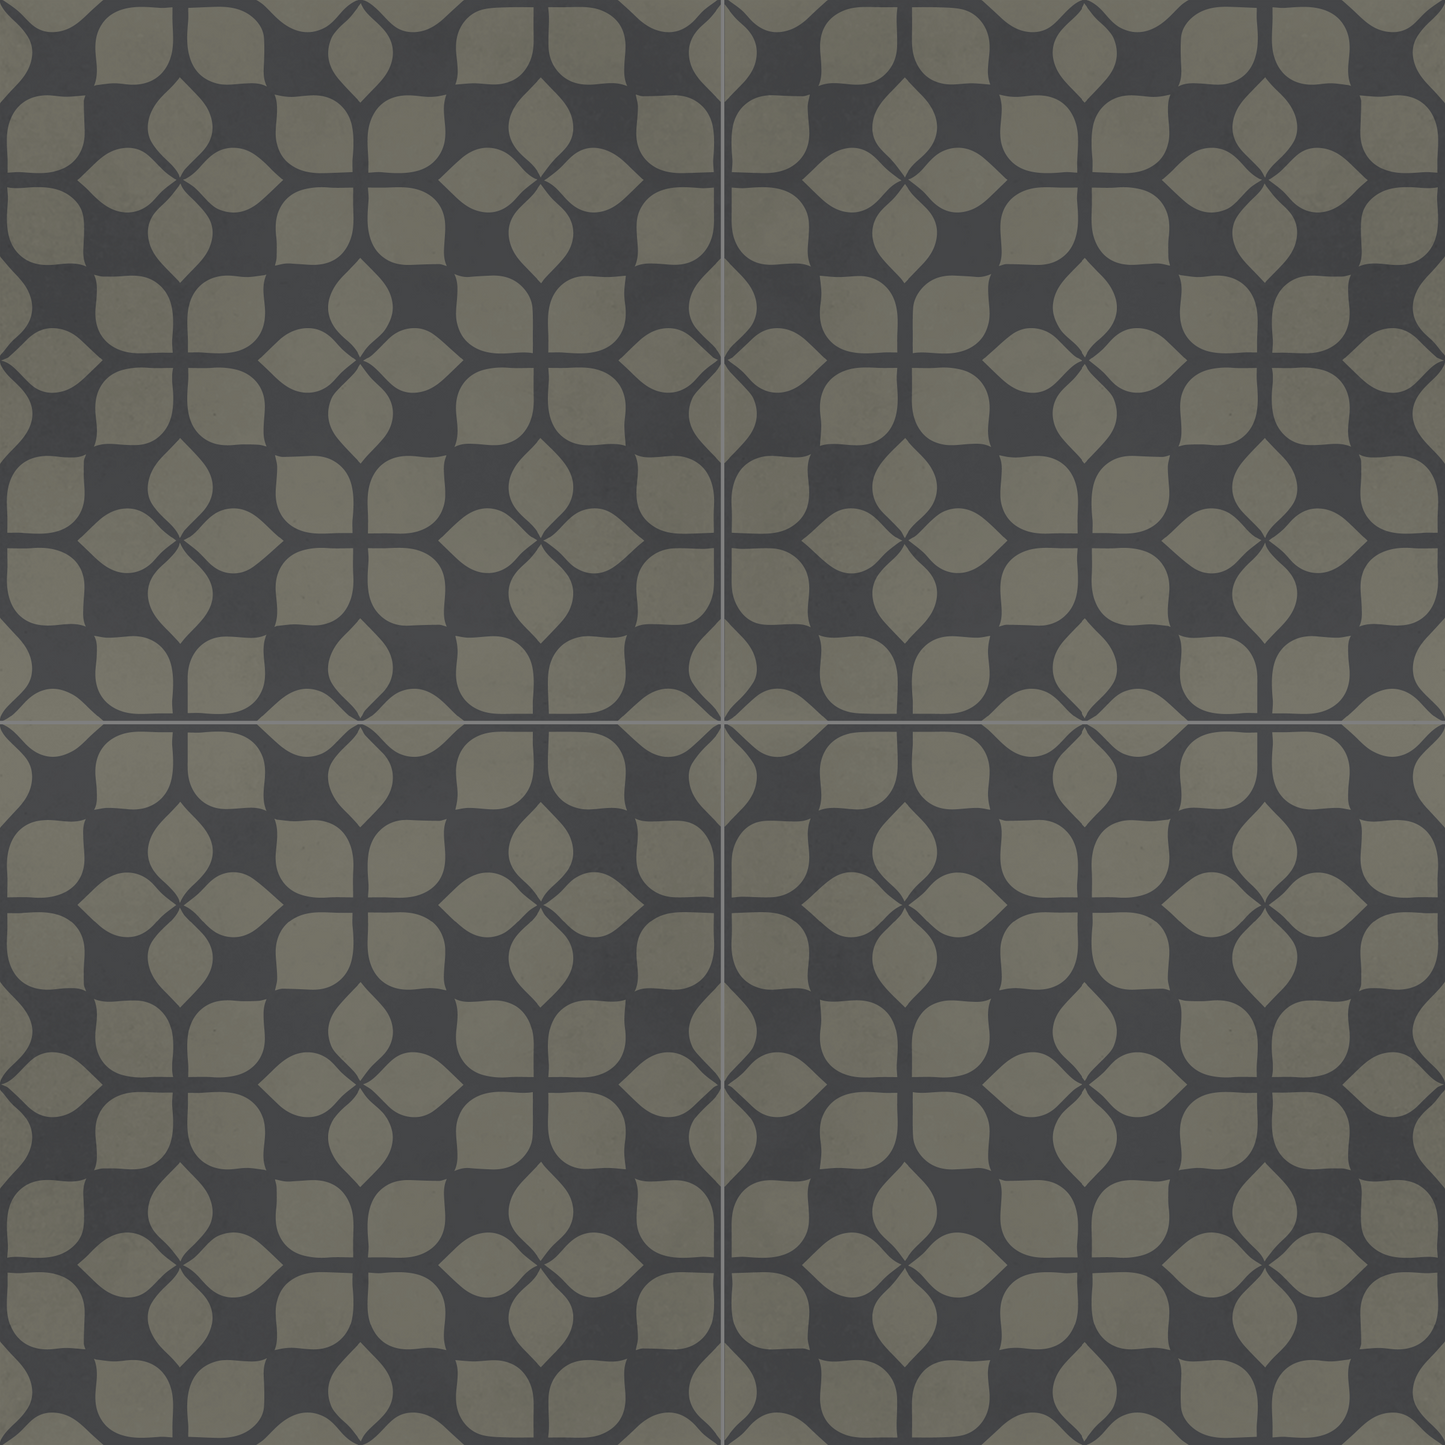 Encaustic Cement Tile, Concrete Tile, Modern Floral Pattern Tiles